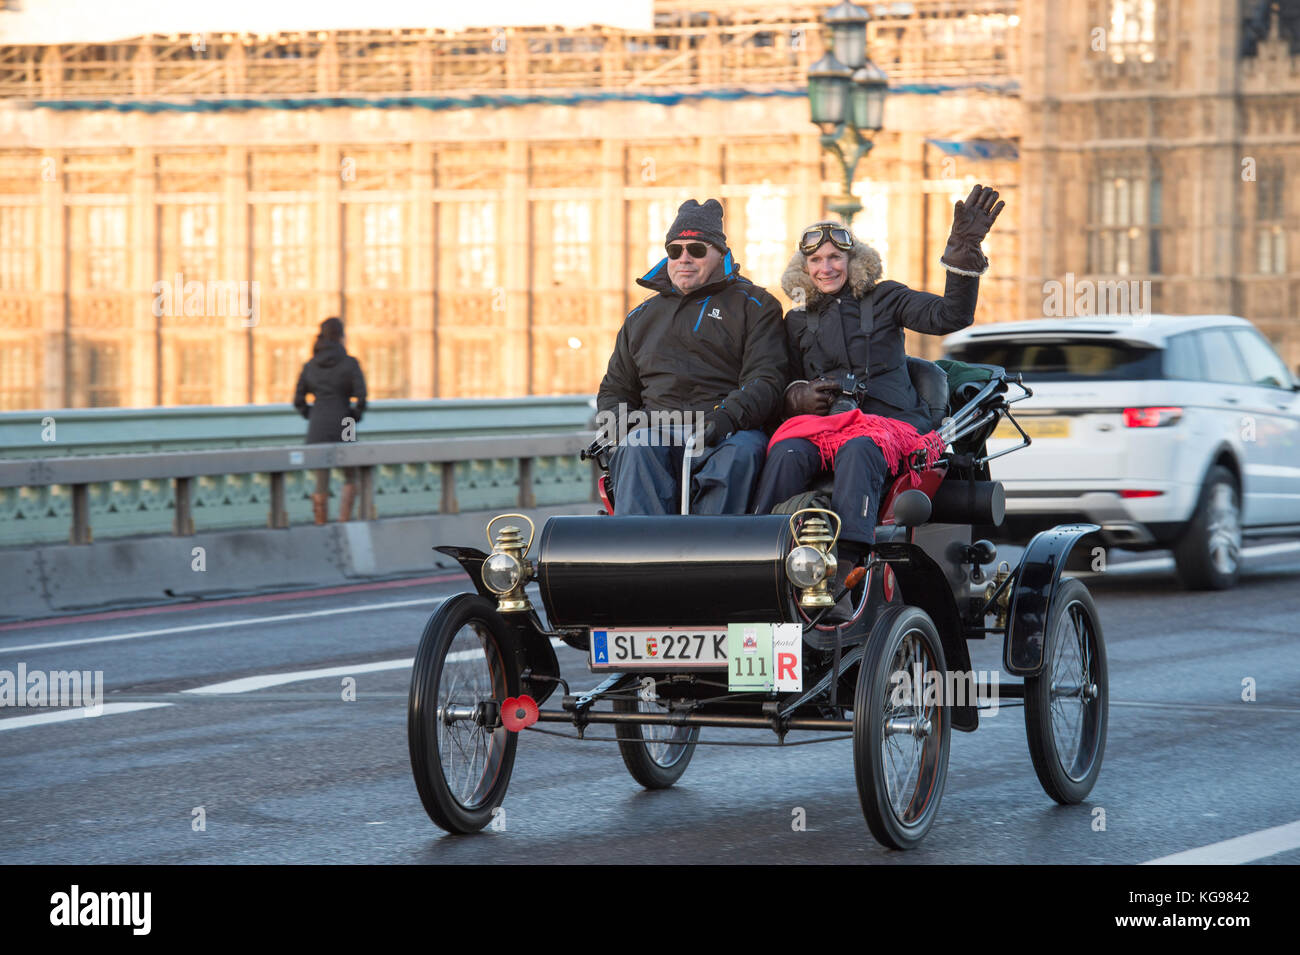 5 novembre 2017. Bonhams de Londres à Brighton, la course de voiture de vétéran, la plus longue course automobile au monde, 1902 Oldsmobile sur le pont de Westminster. Banque D'Images